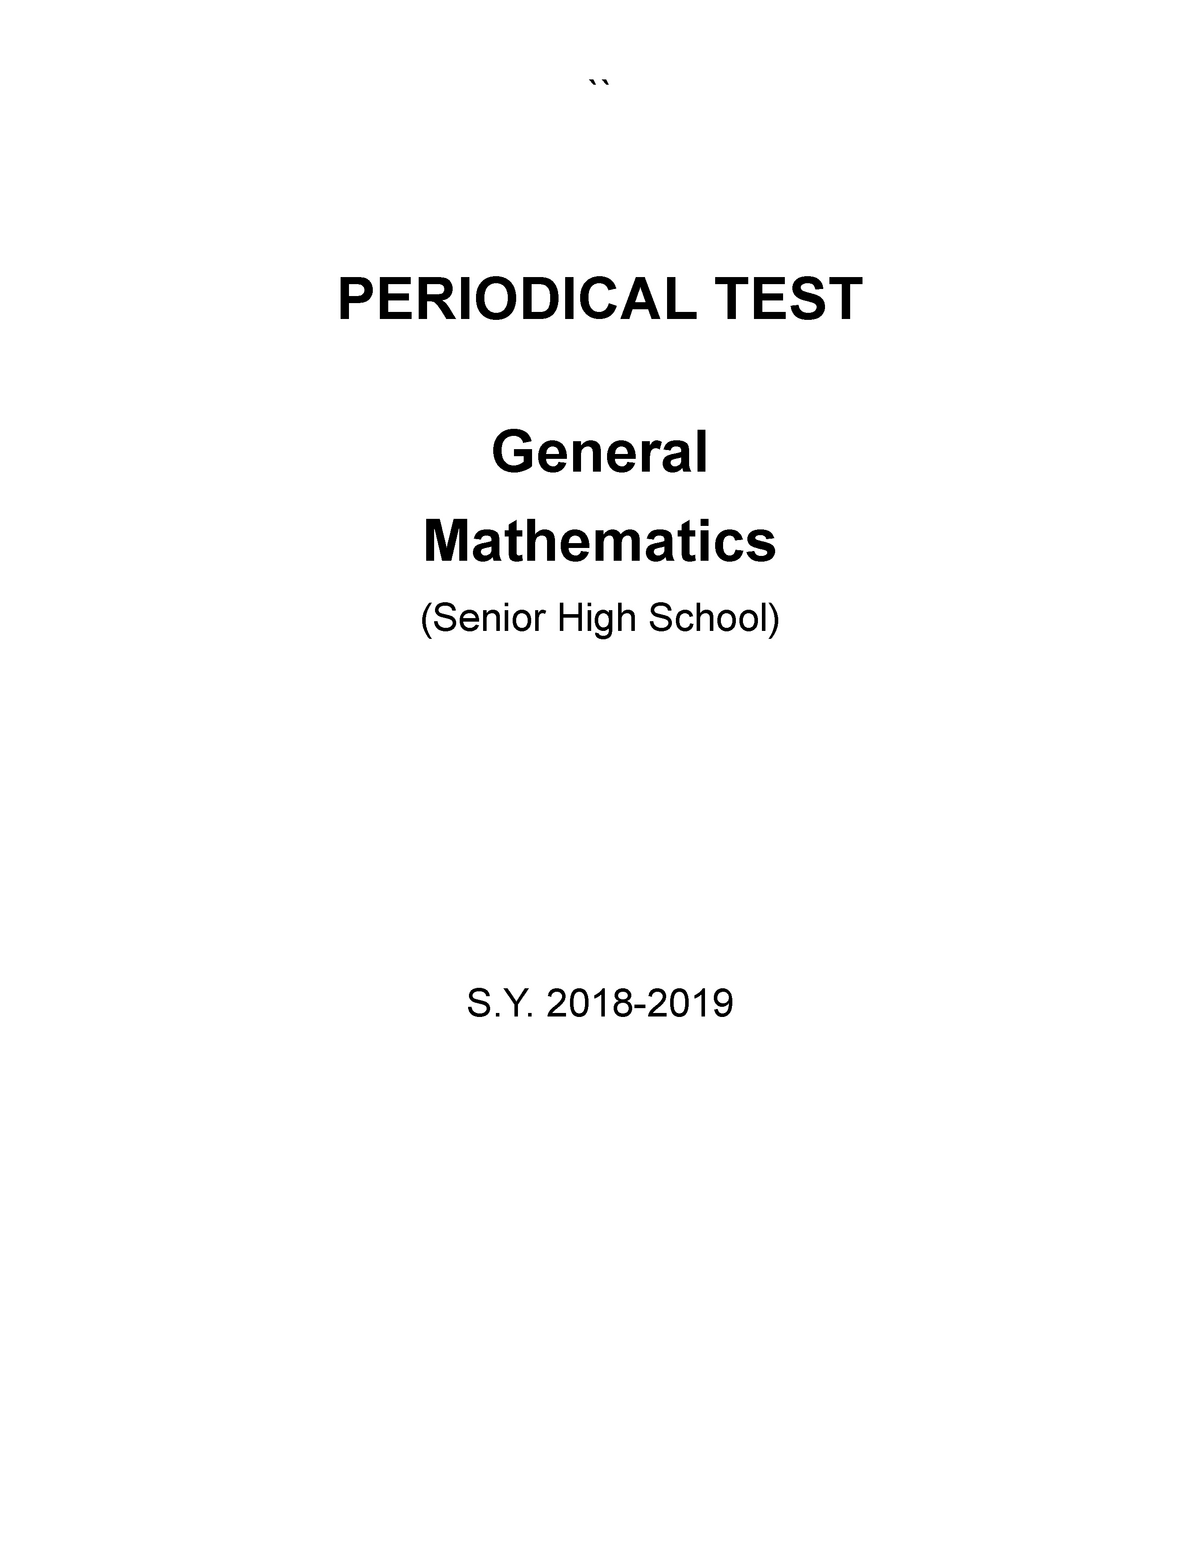 general-mathematics-sample-periodical-exam-periodical-test-general